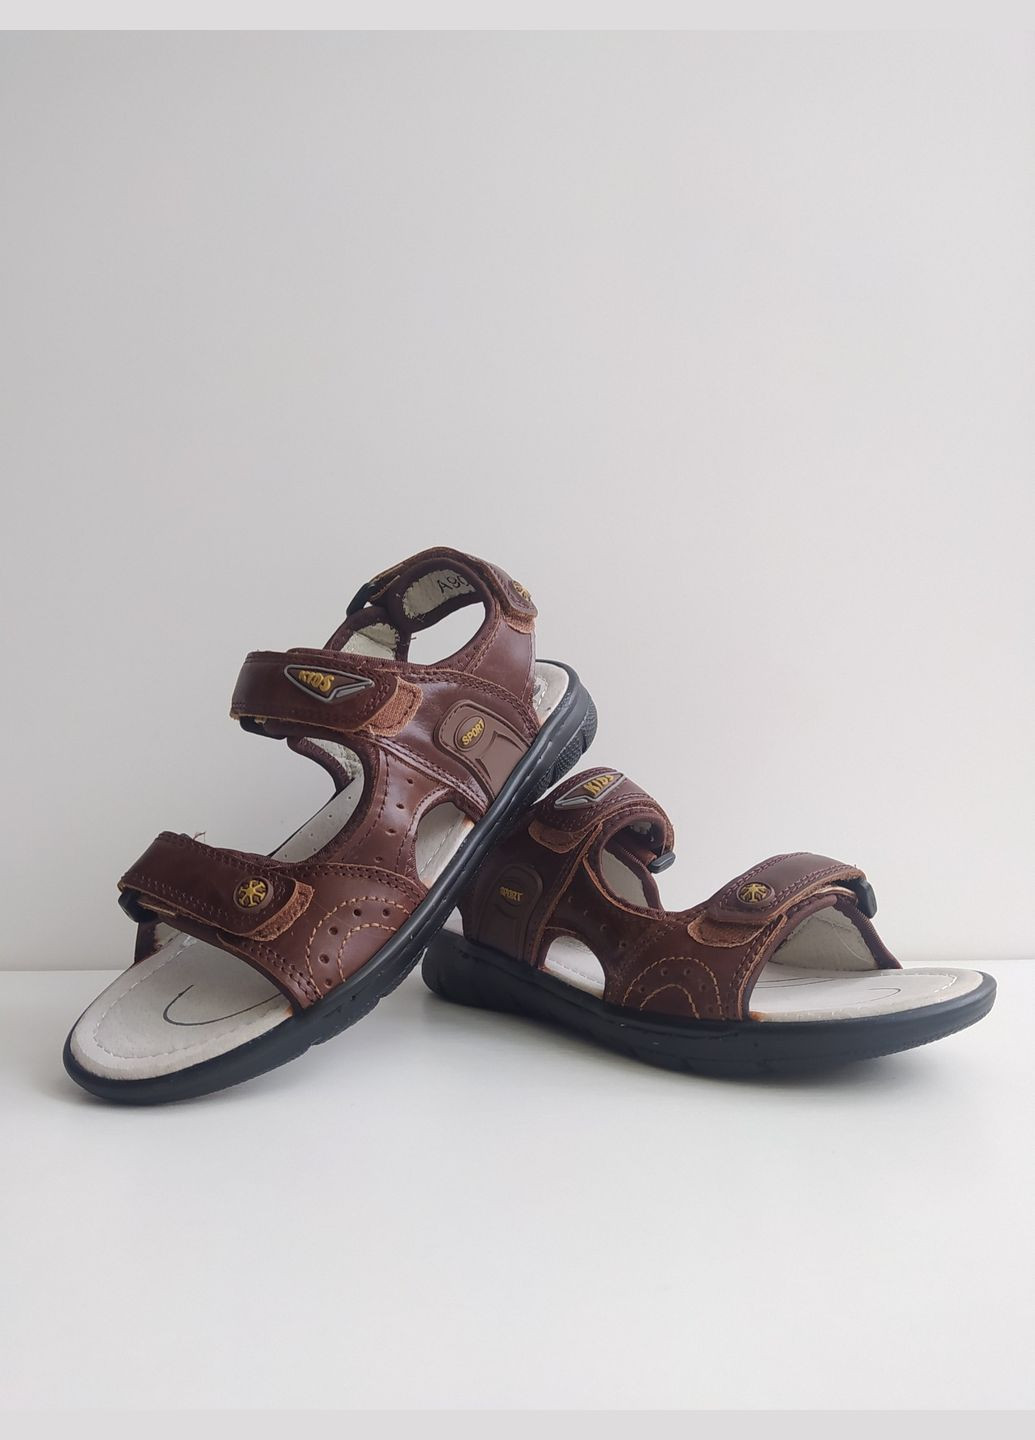 Коричневые детские кожаные сандалии 32 г 20,5 см коричневый артикул б121 EEBB